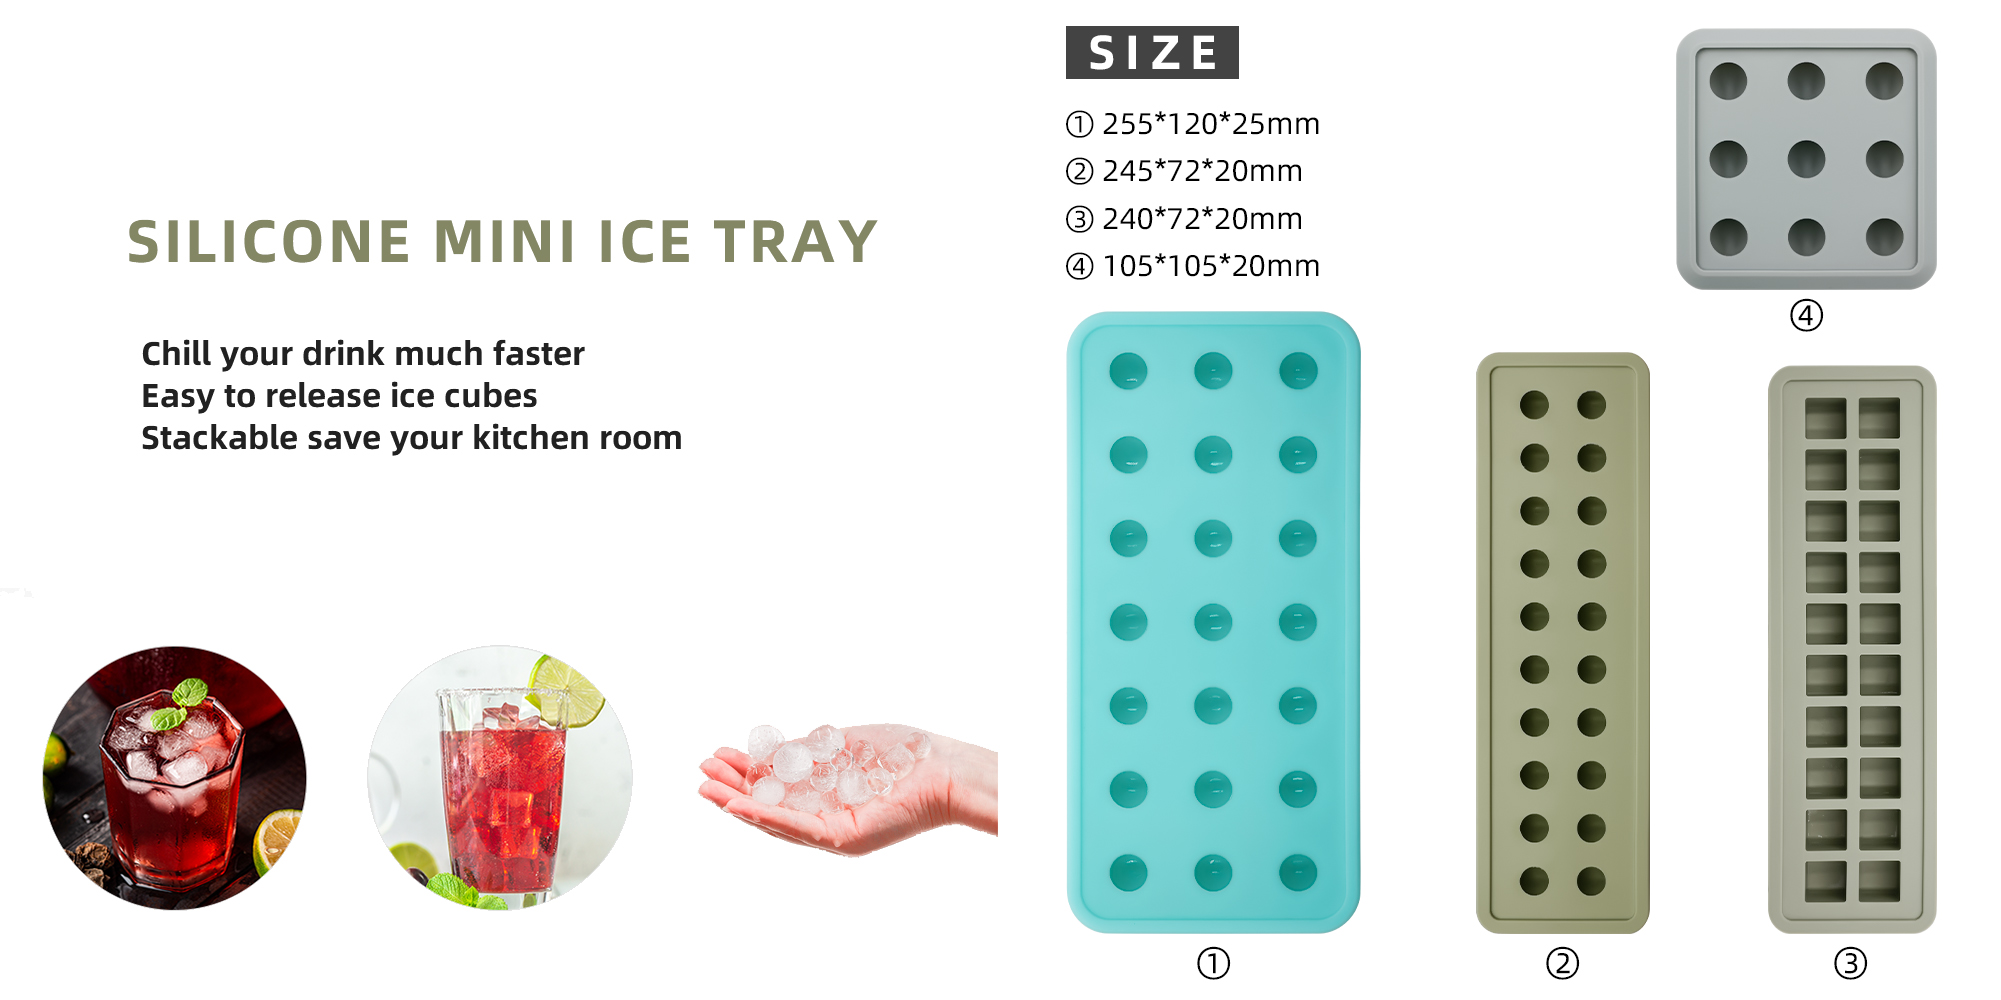 အထုပ် 4 ထုပ် အလွယ်တကူ ထုတ်လွှတ်နိုင်သော Mini Silicone ရေခဲသေတ္တာ